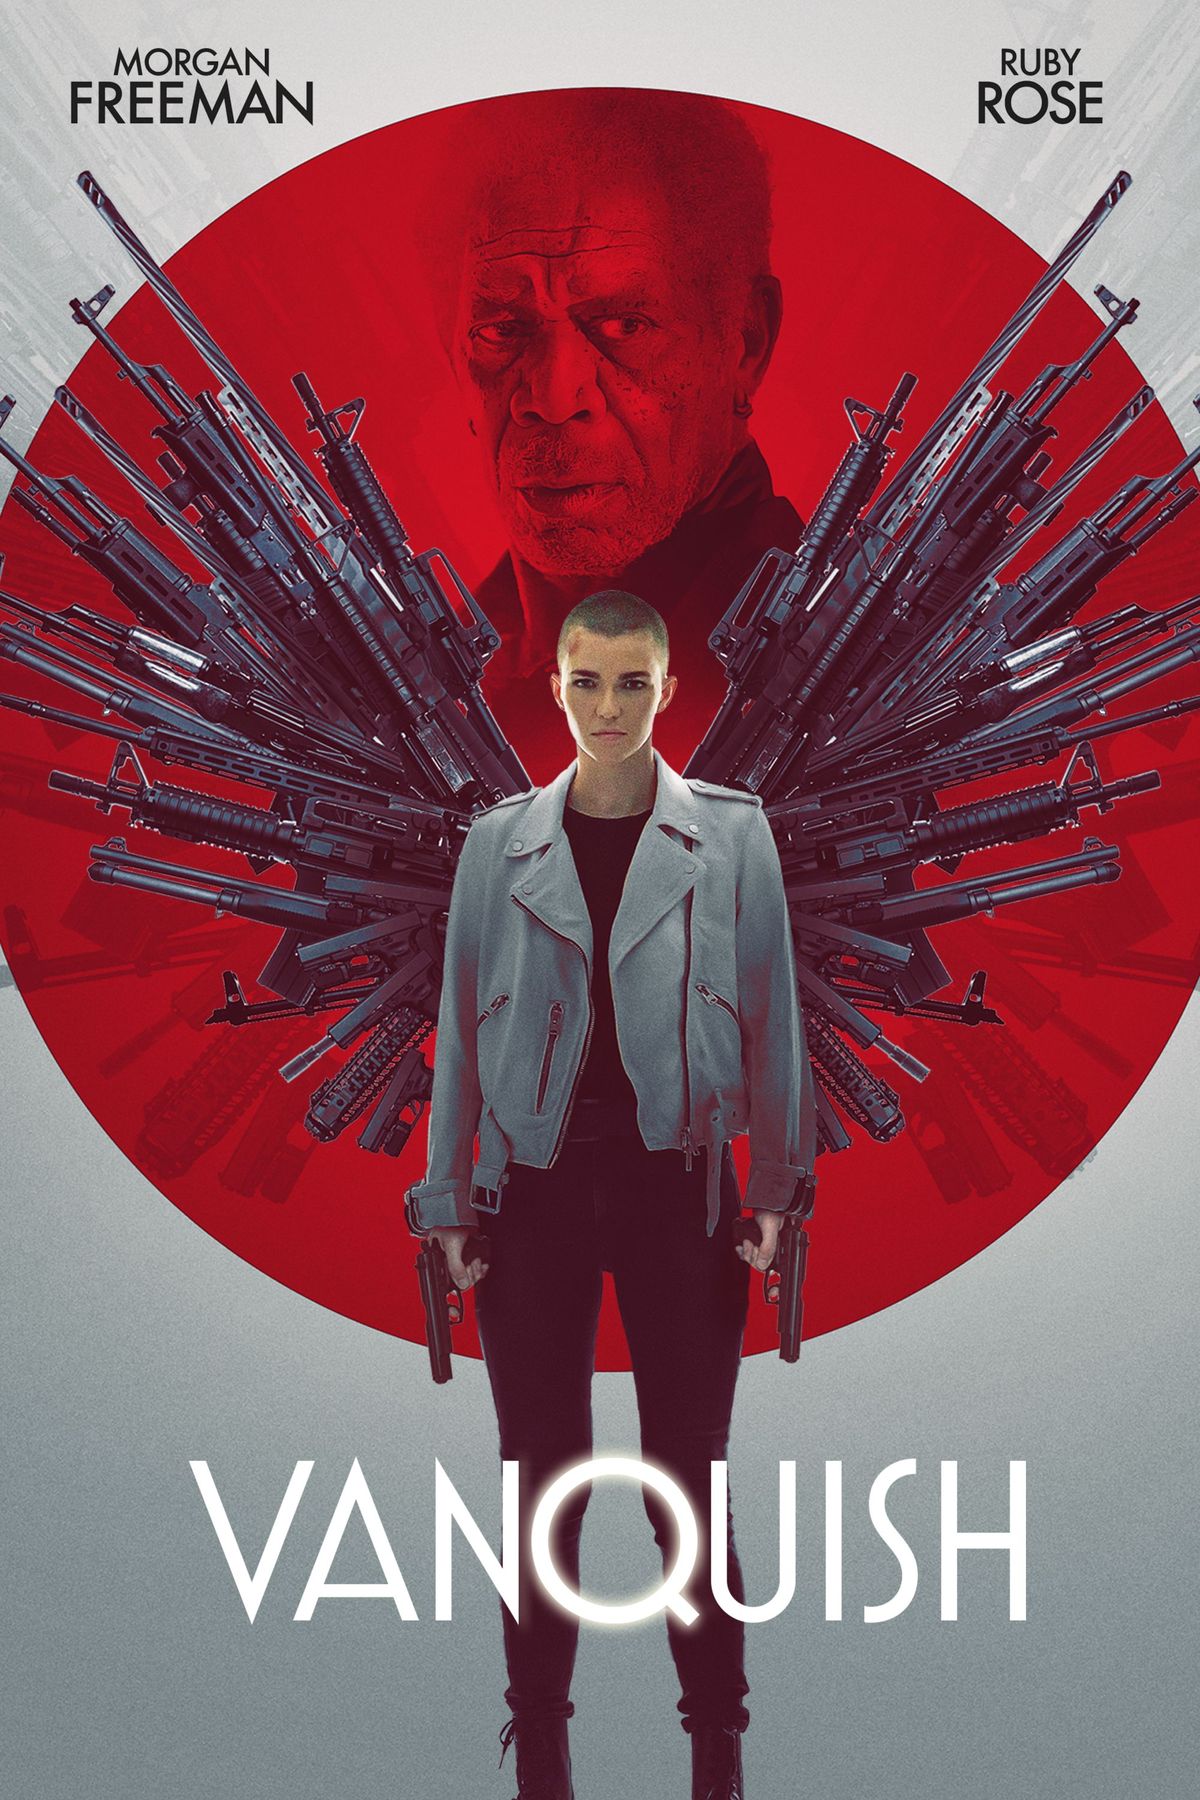 MENONTON: Ruby Rose Goes Penuh John Wick dalam Vanquish Trailer